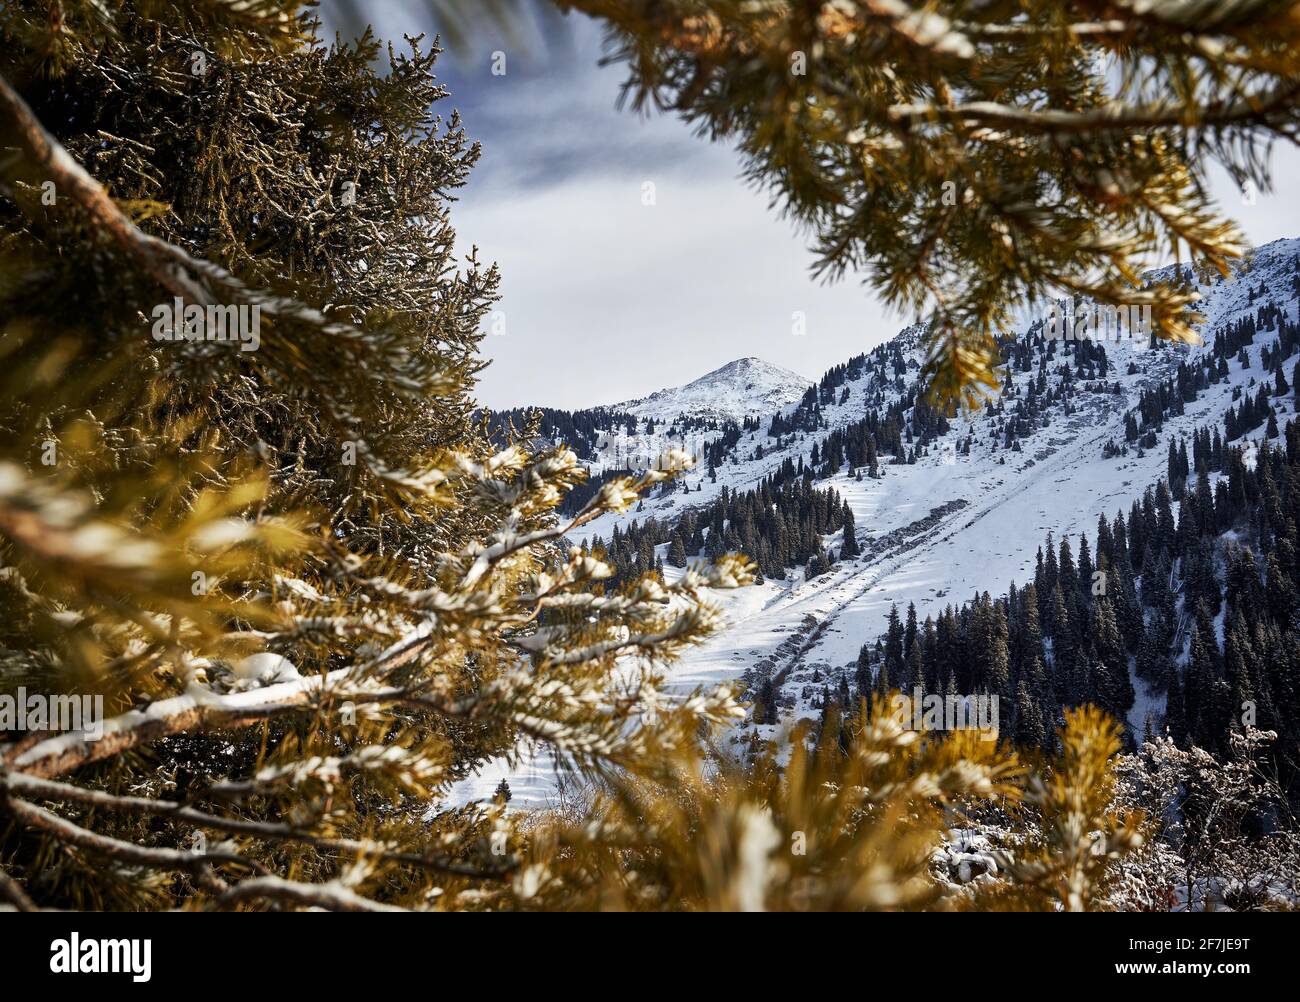 Magnifique paysage de la montagne sommet avec la neige encadrée d'épinettes à Almaty, Kazakhstan. Concept de randonnée et de plein air Banque D'Images